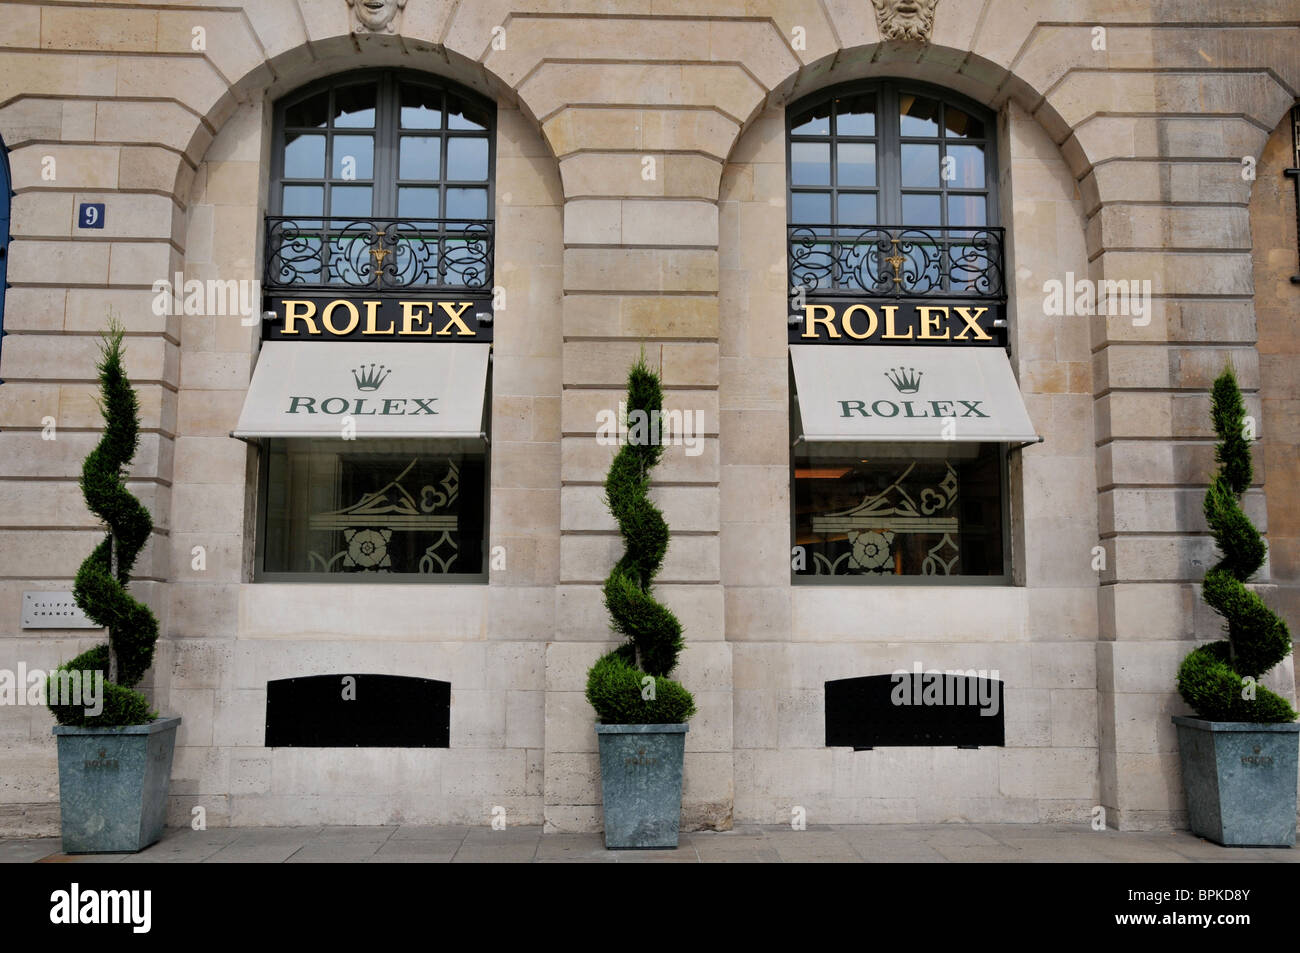 Rolex store, Paris, France Stock Photo - Alamy